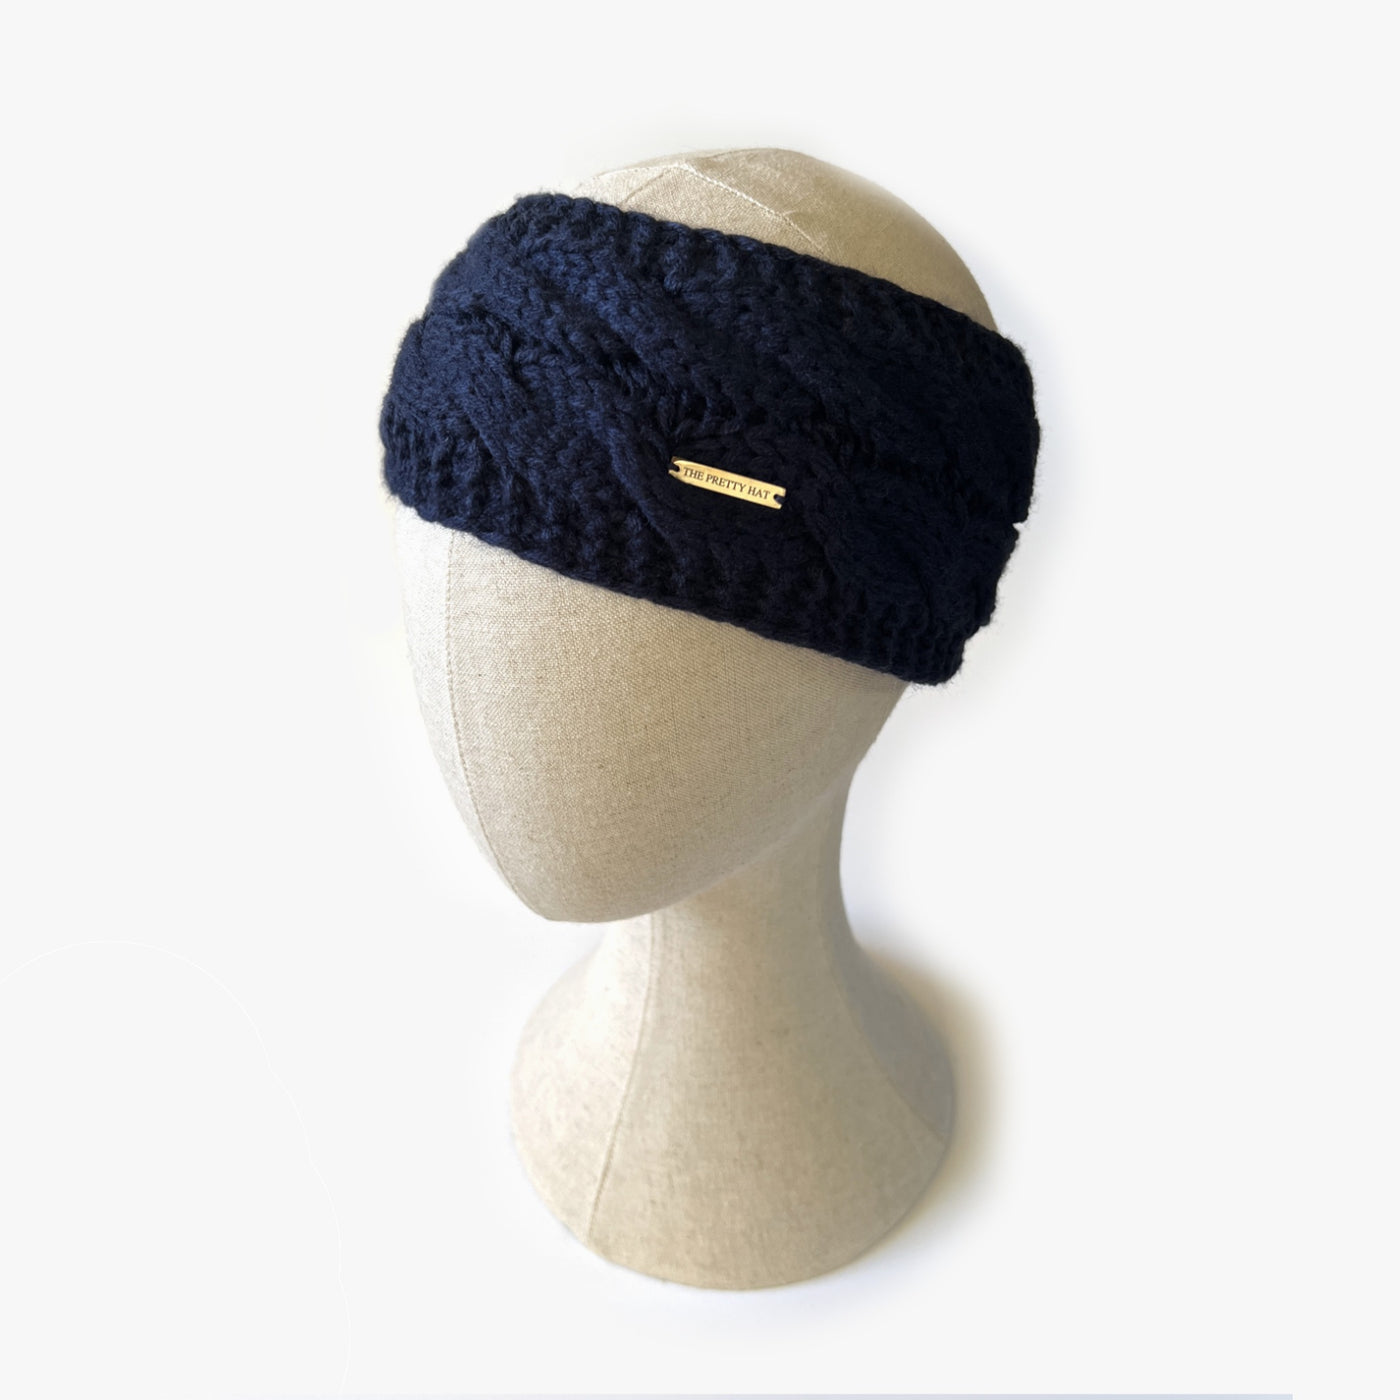 Fleece Lined Cable Knit Headband - Navy